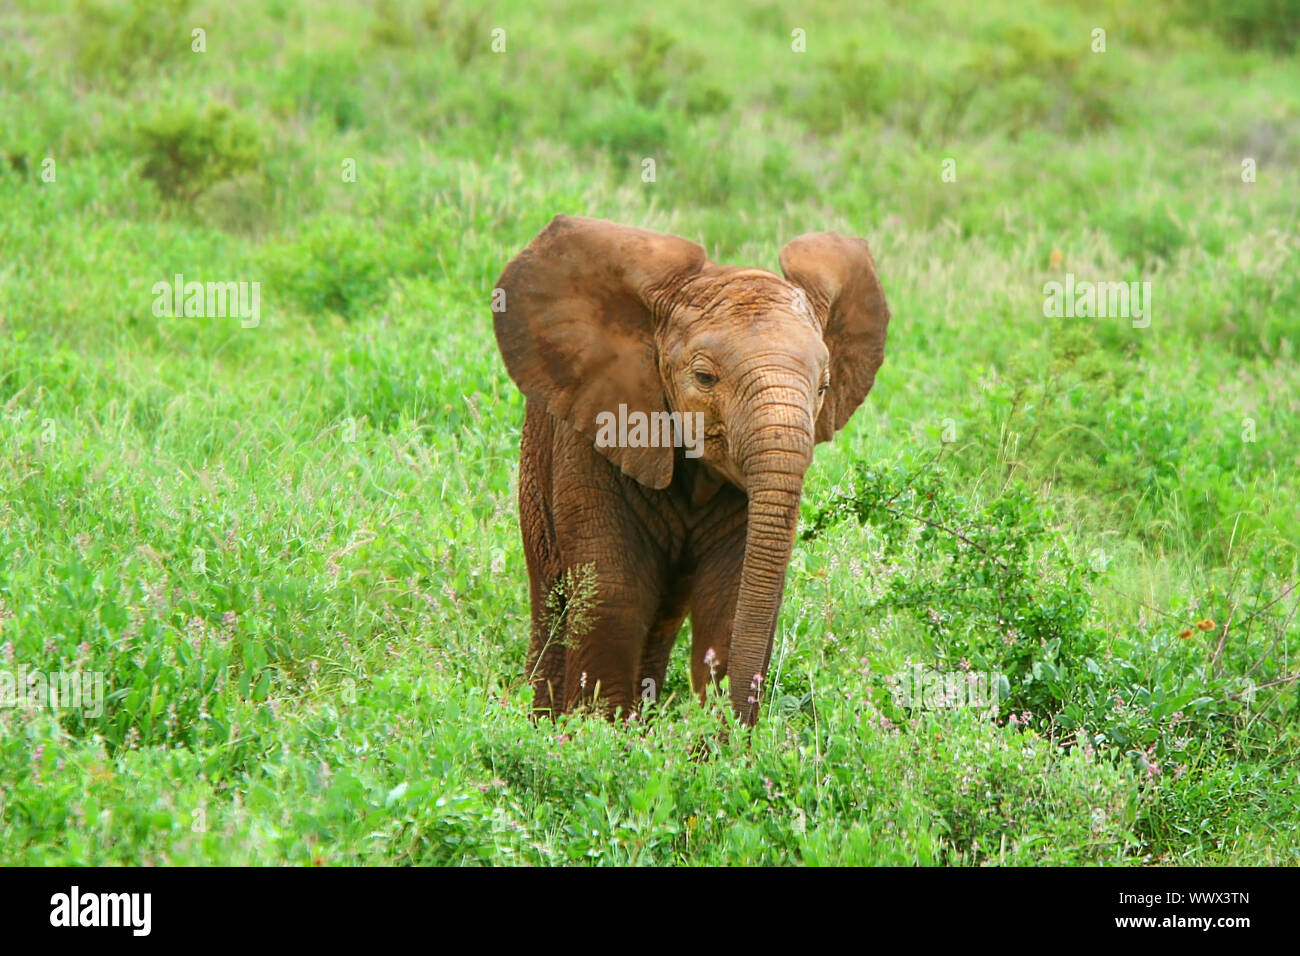 Baby Elephant in the wild Stock Photo